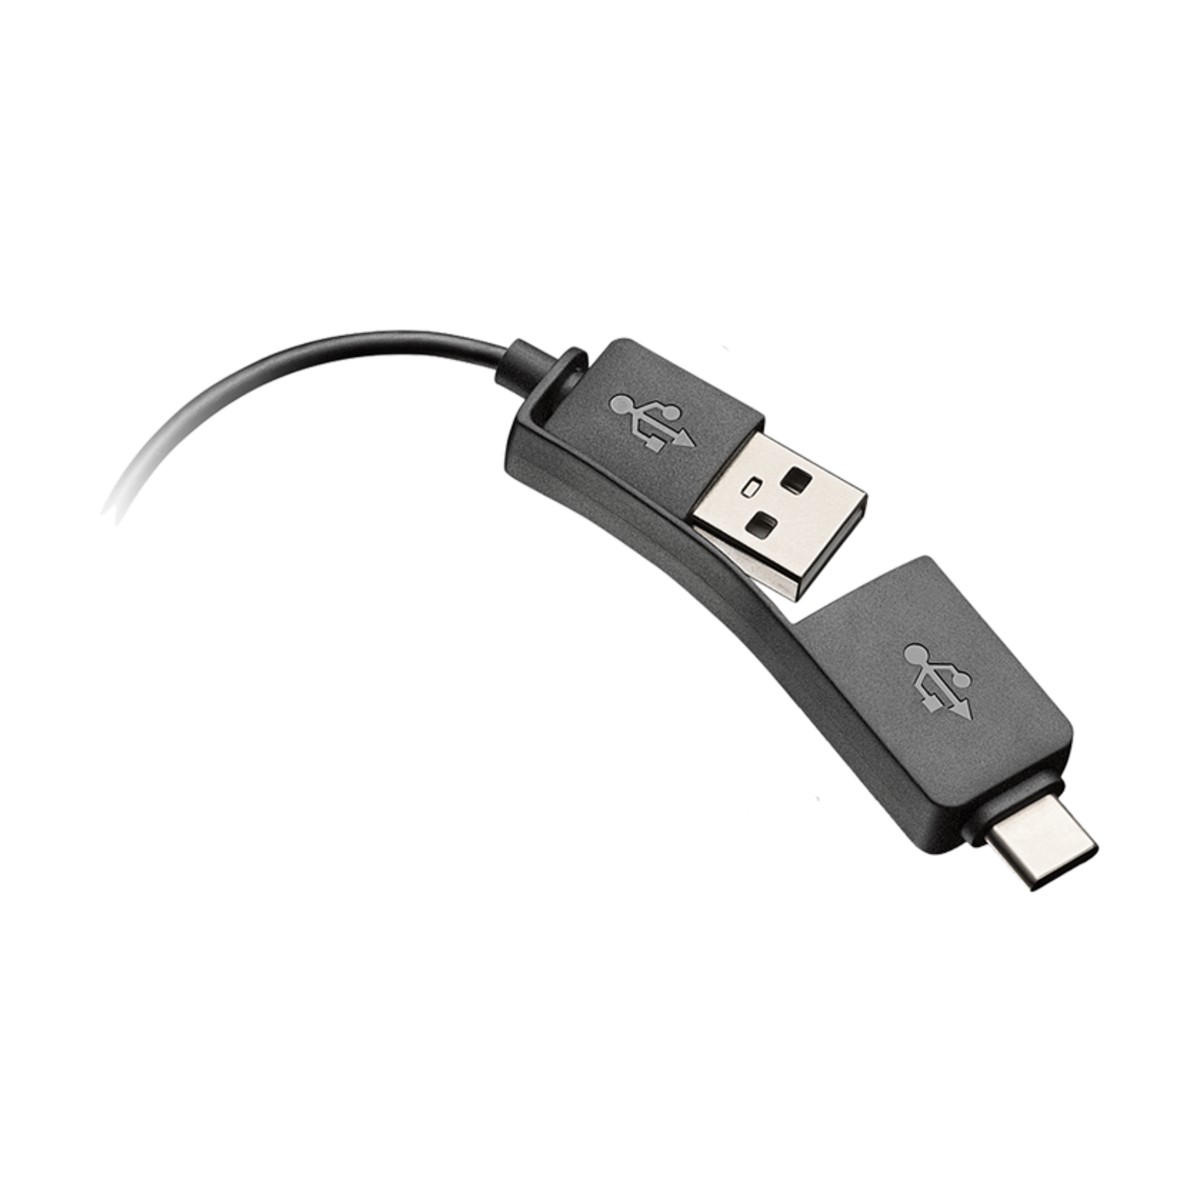 POLY ADAPTADOR DIGITAL DA85 USB- A O C. CONTROL EN LINEA (218267-01)